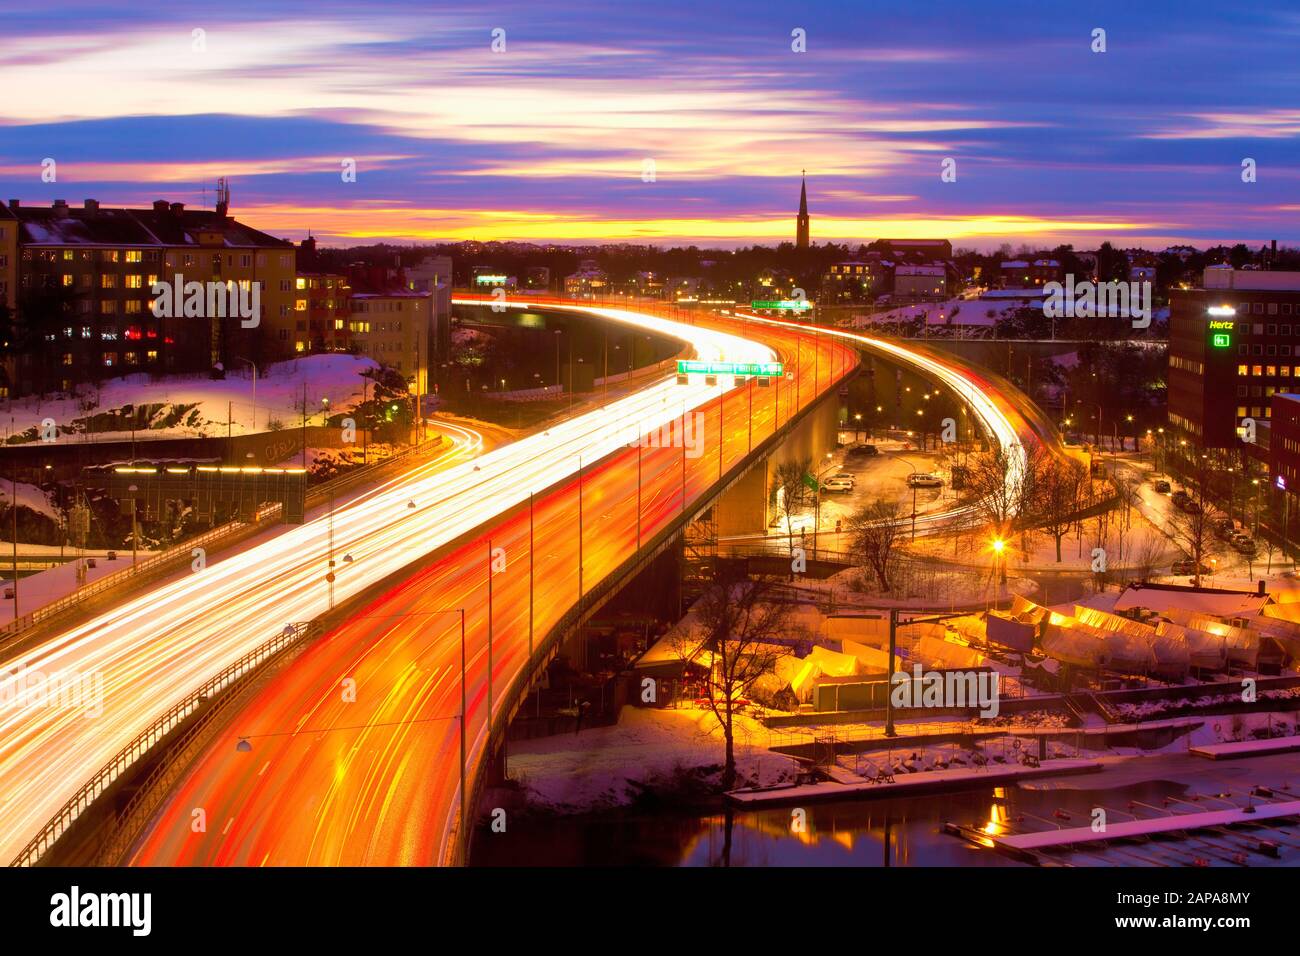 Sweden, Stockholm - Traffic on Essinge Highway at Dusk Stock Photo